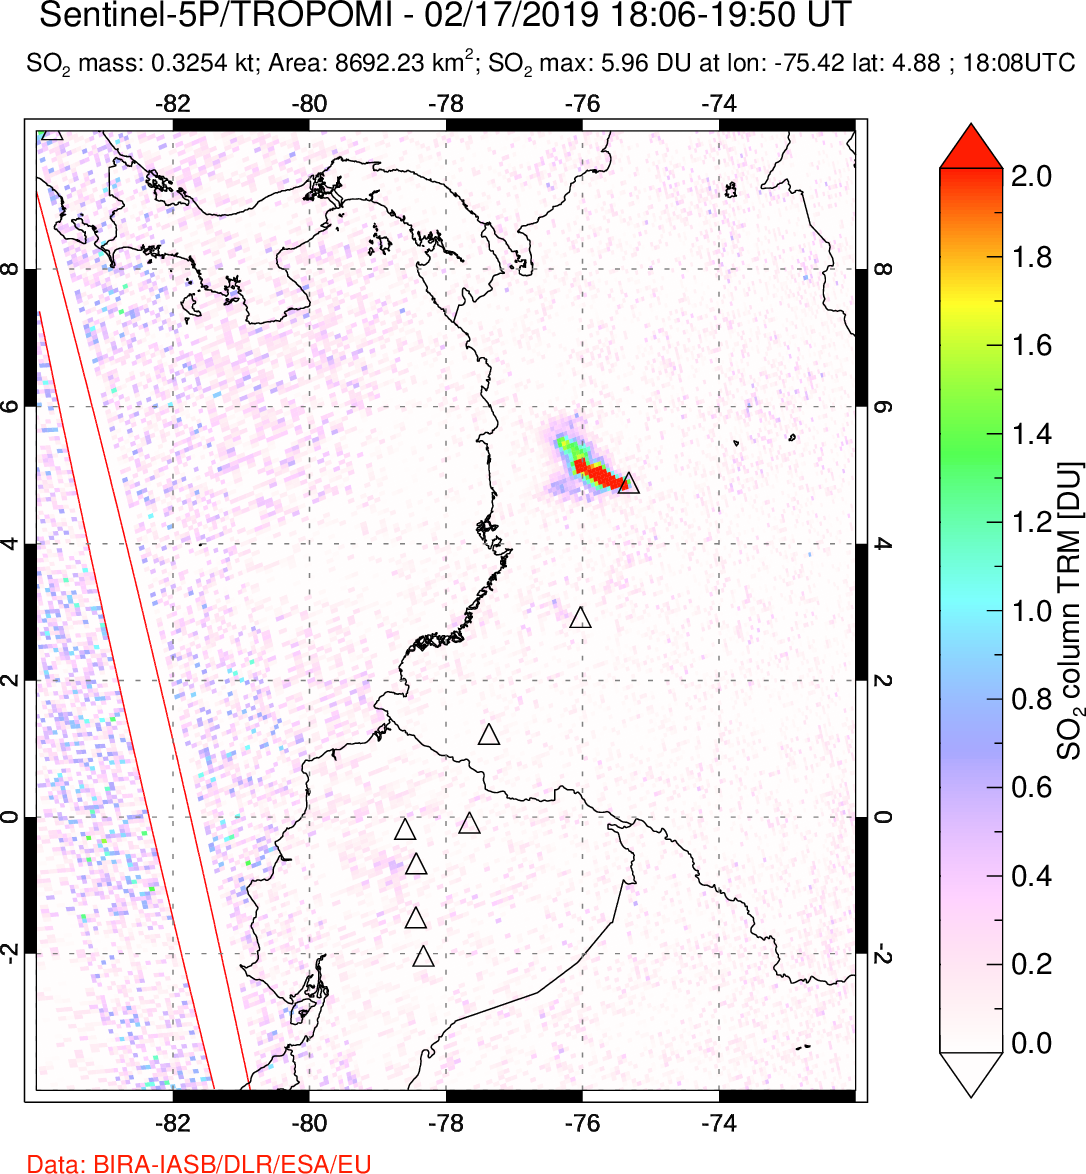 A sulfur dioxide image over Ecuador on Feb 17, 2019.